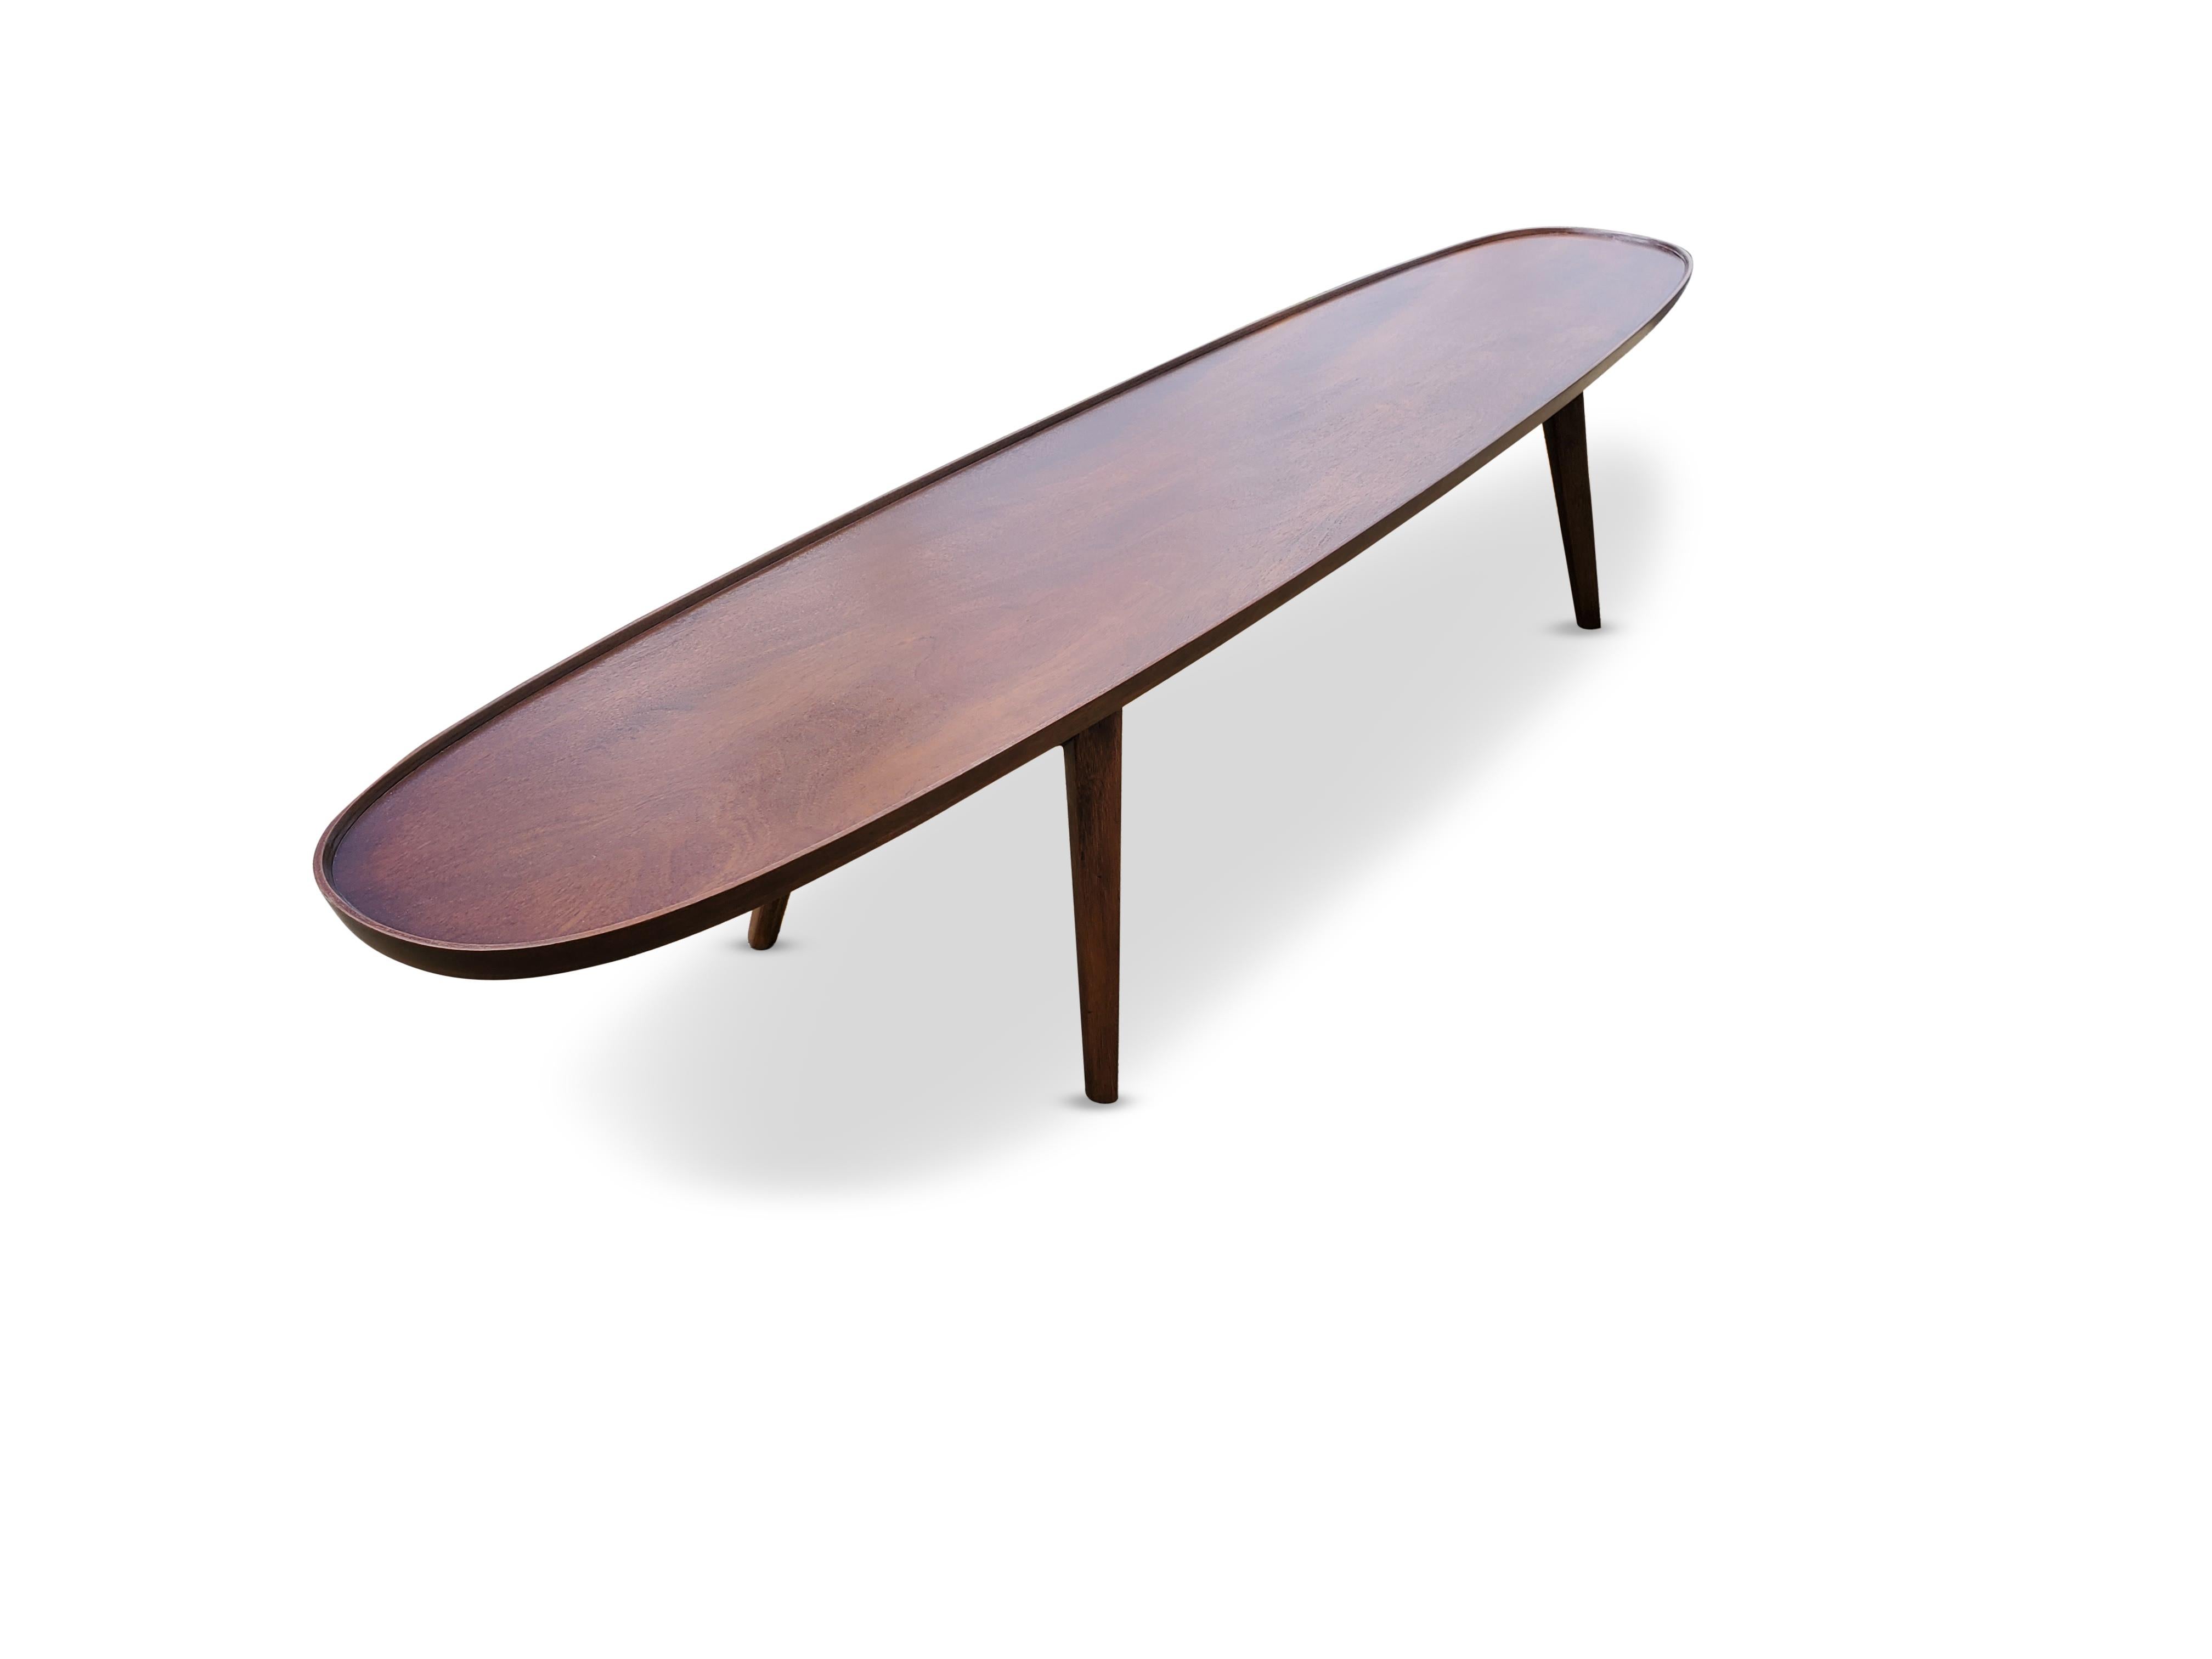 20th Century Edward Wormley Surfboard Coffee Table by Dunbar